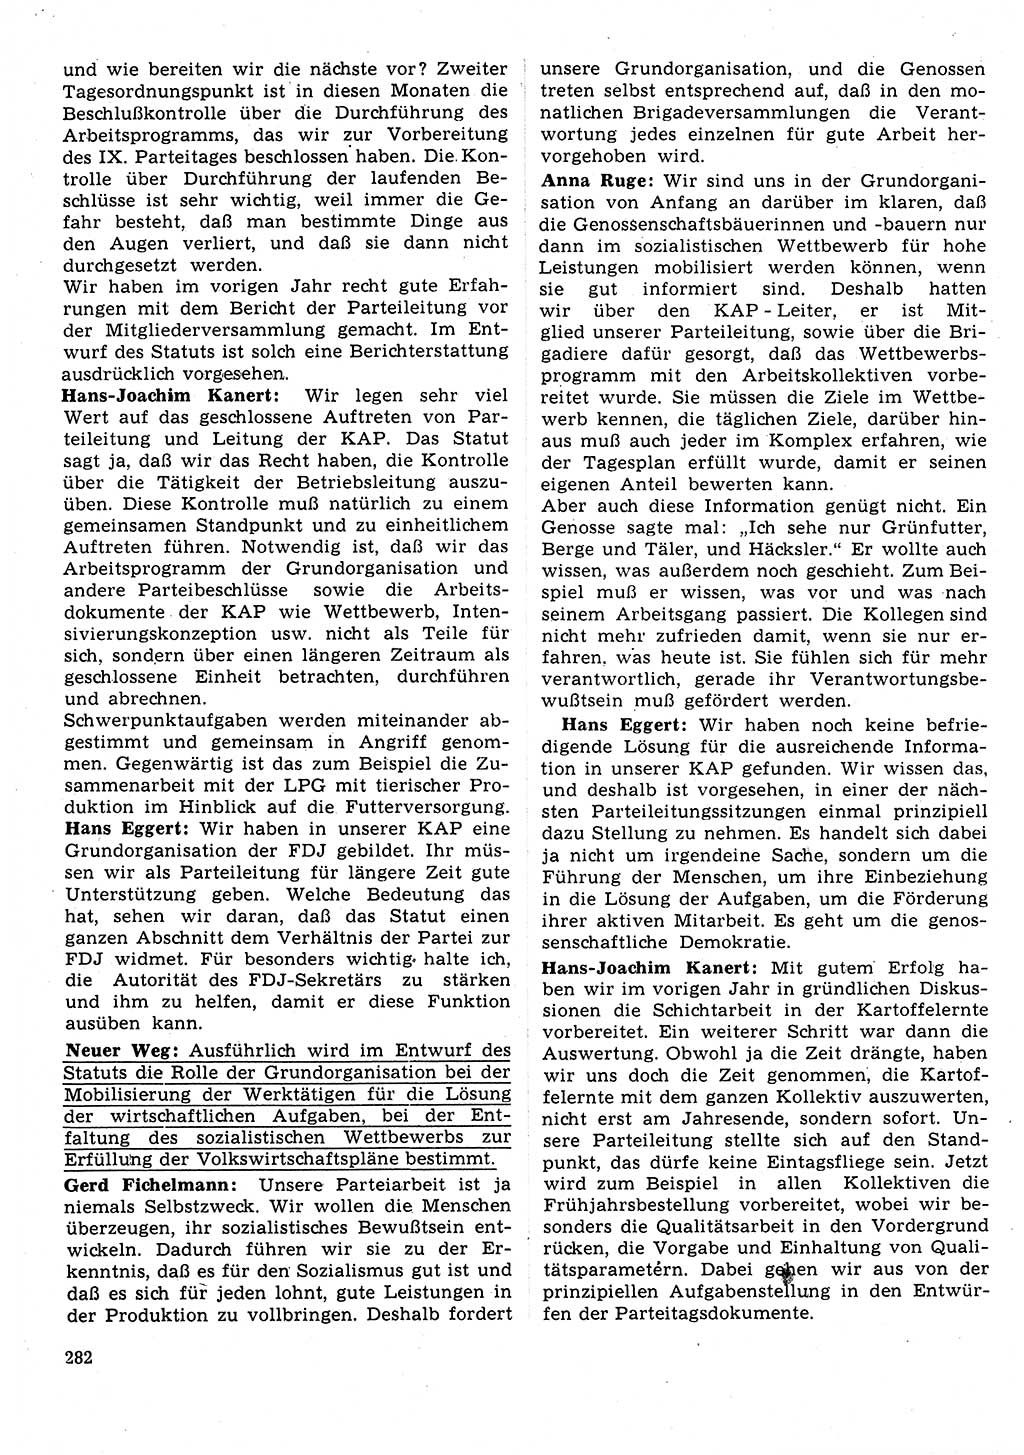 Neuer Weg (NW), Organ des Zentralkomitees (ZK) der SED (Sozialistische Einheitspartei Deutschlands) für Fragen des Parteilebens, 31. Jahrgang [Deutsche Demokratische Republik (DDR)] 1976, Seite 282 (NW ZK SED DDR 1976, S. 282)